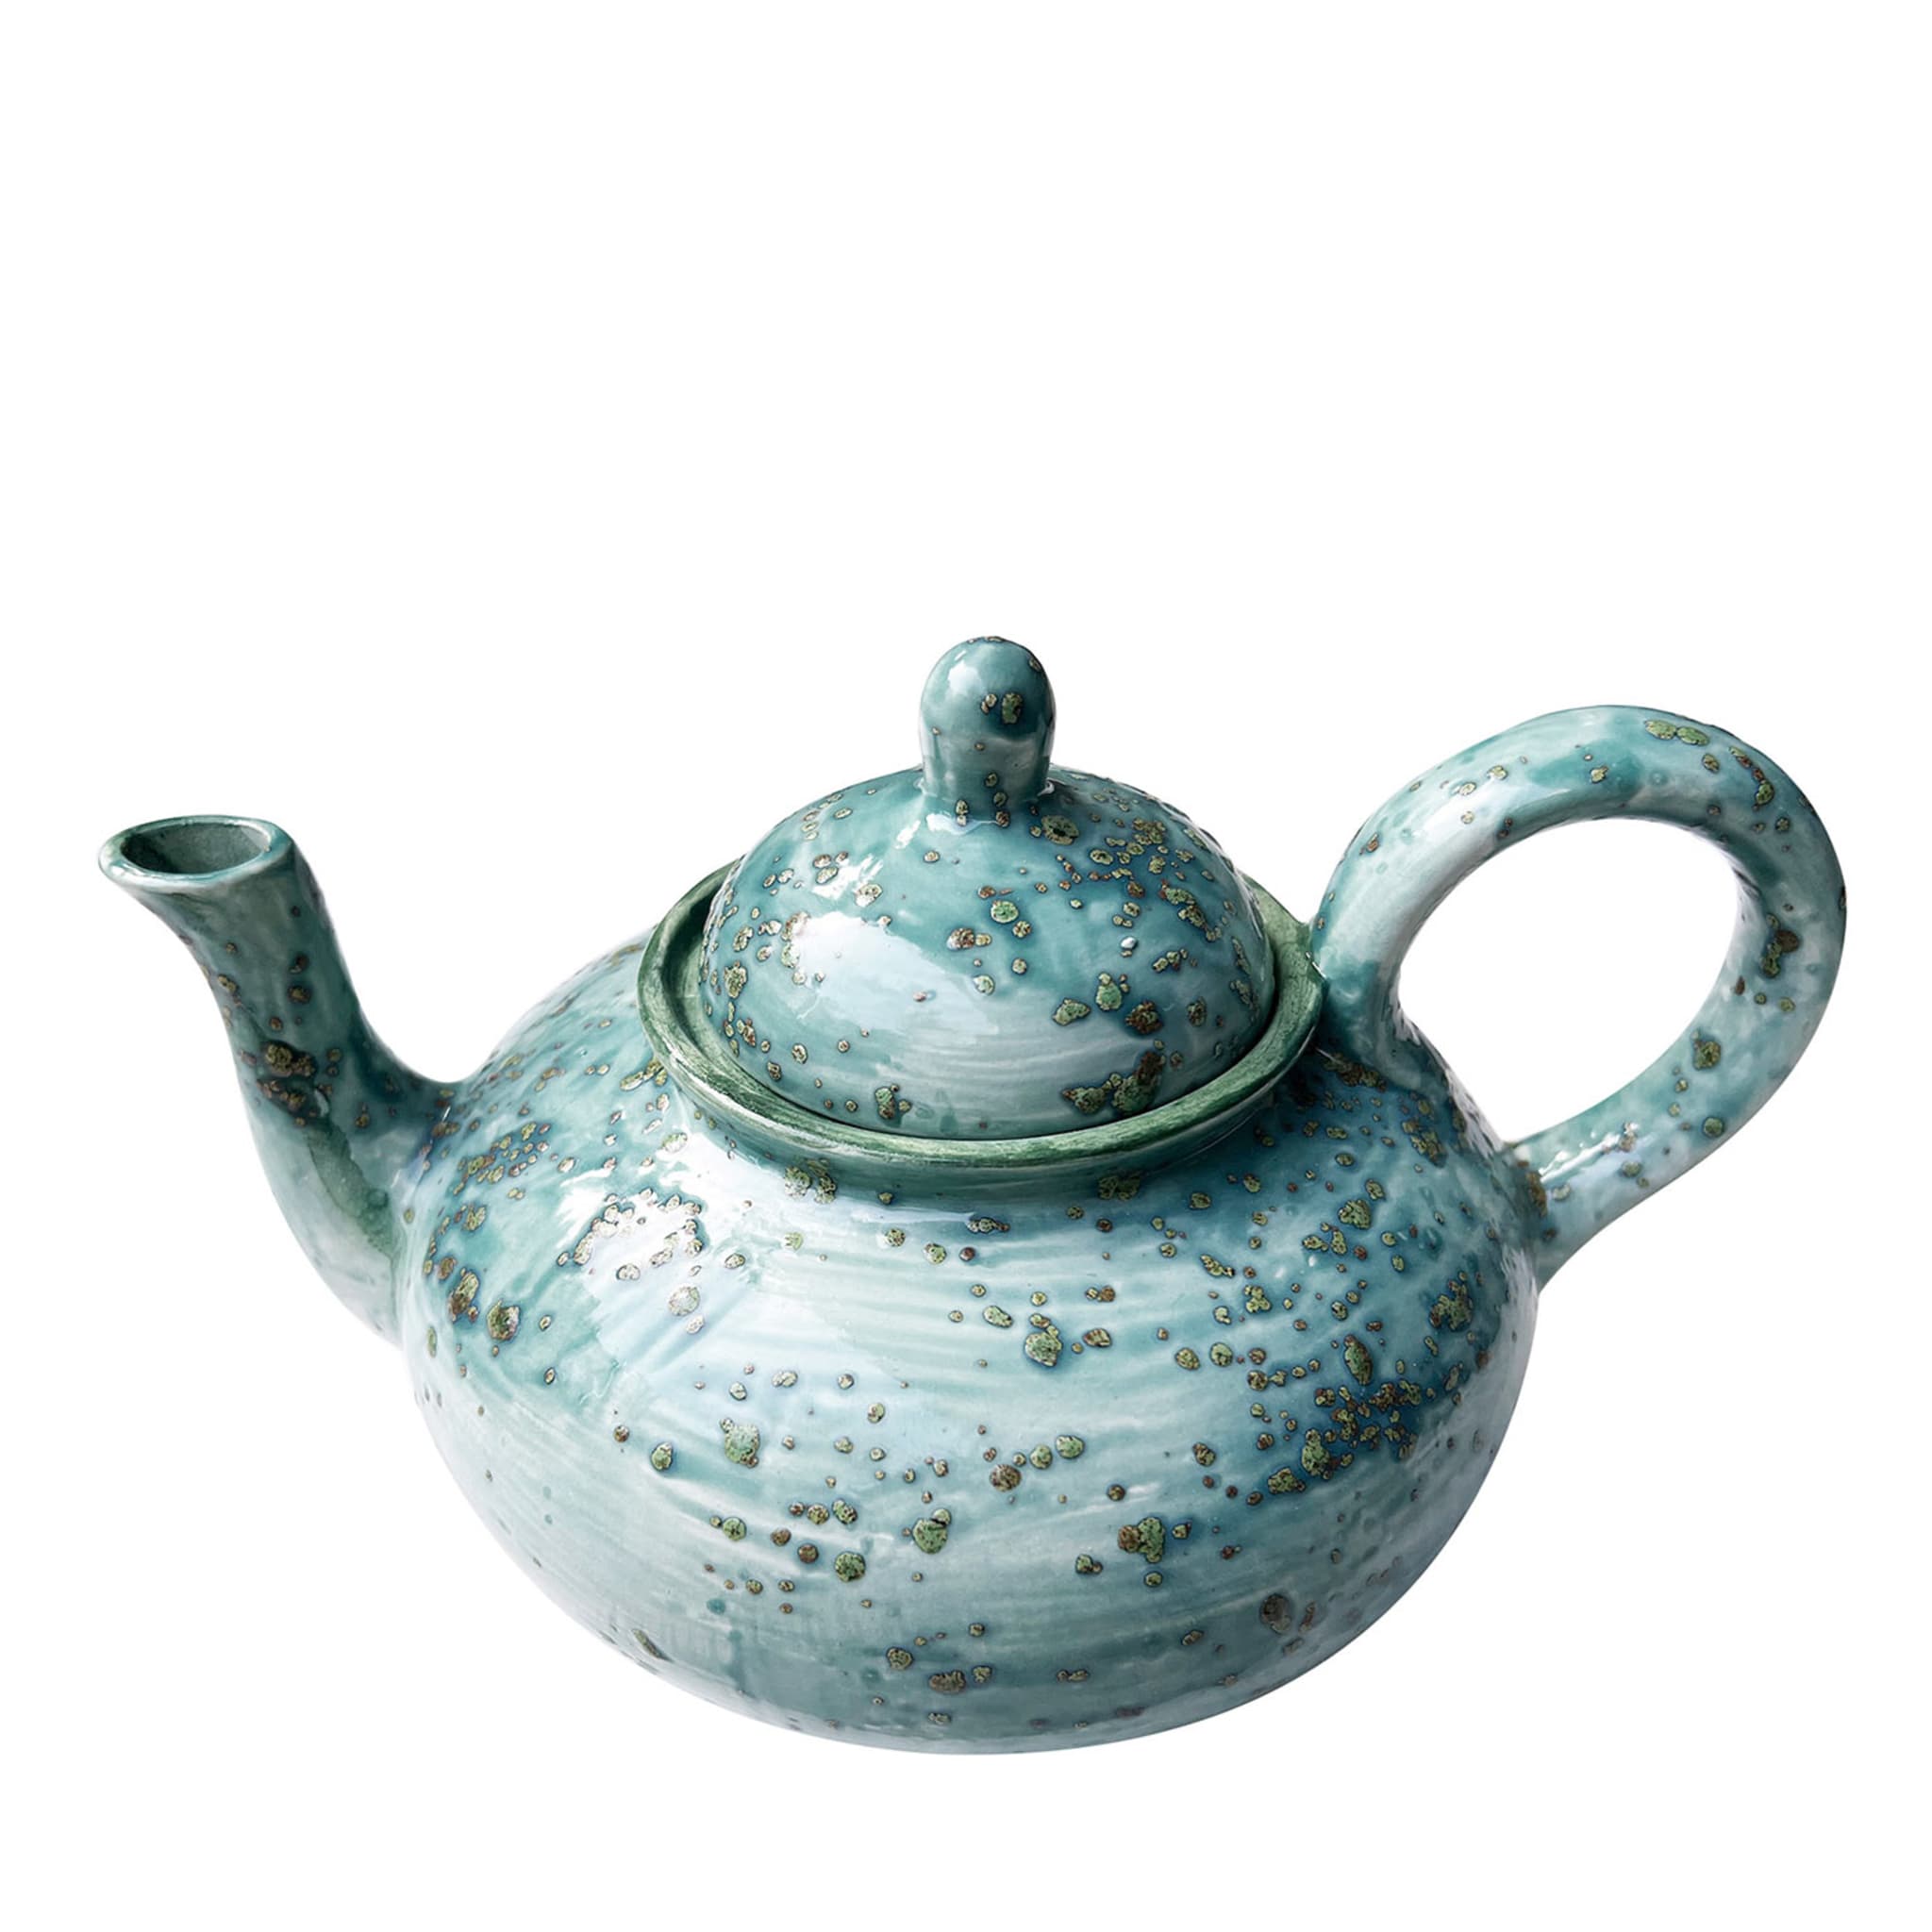 Jade Teal Tea Pot - Main view